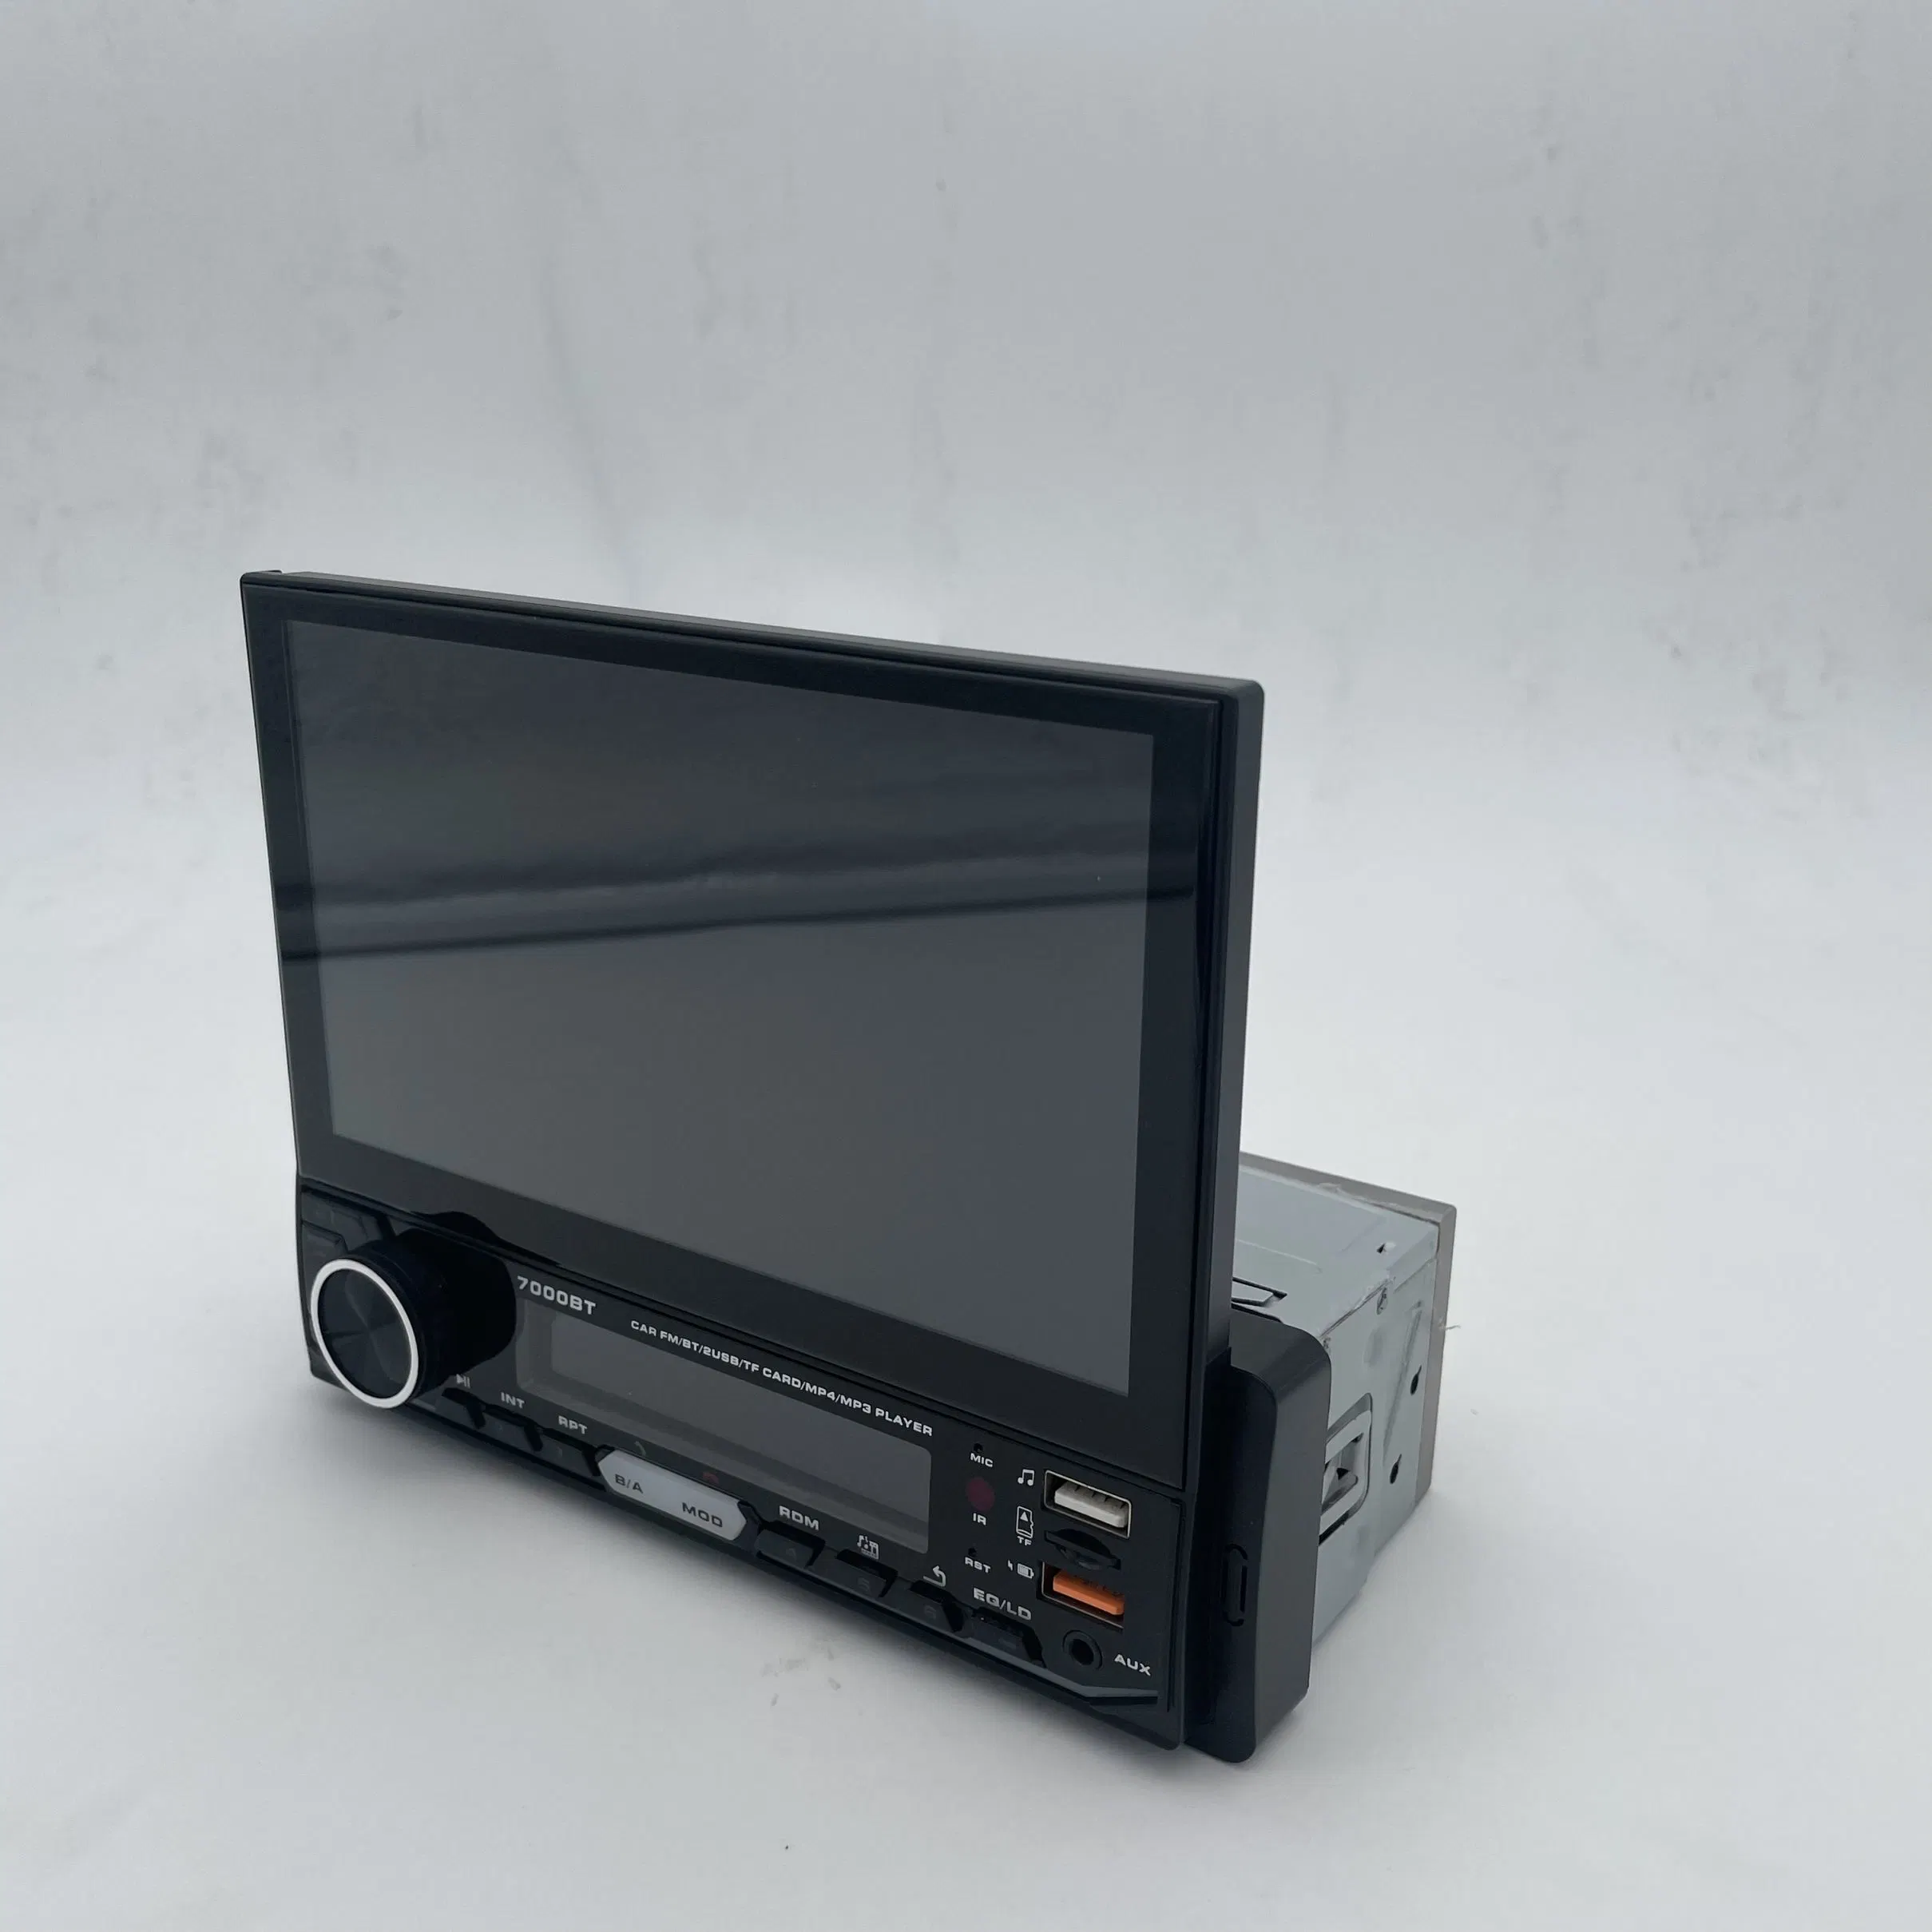 Radio 1DIN retráctil automática MP5 Reproductor Multimedia 7pulgadas estéreo para coche reproductor de DVD de vídeo